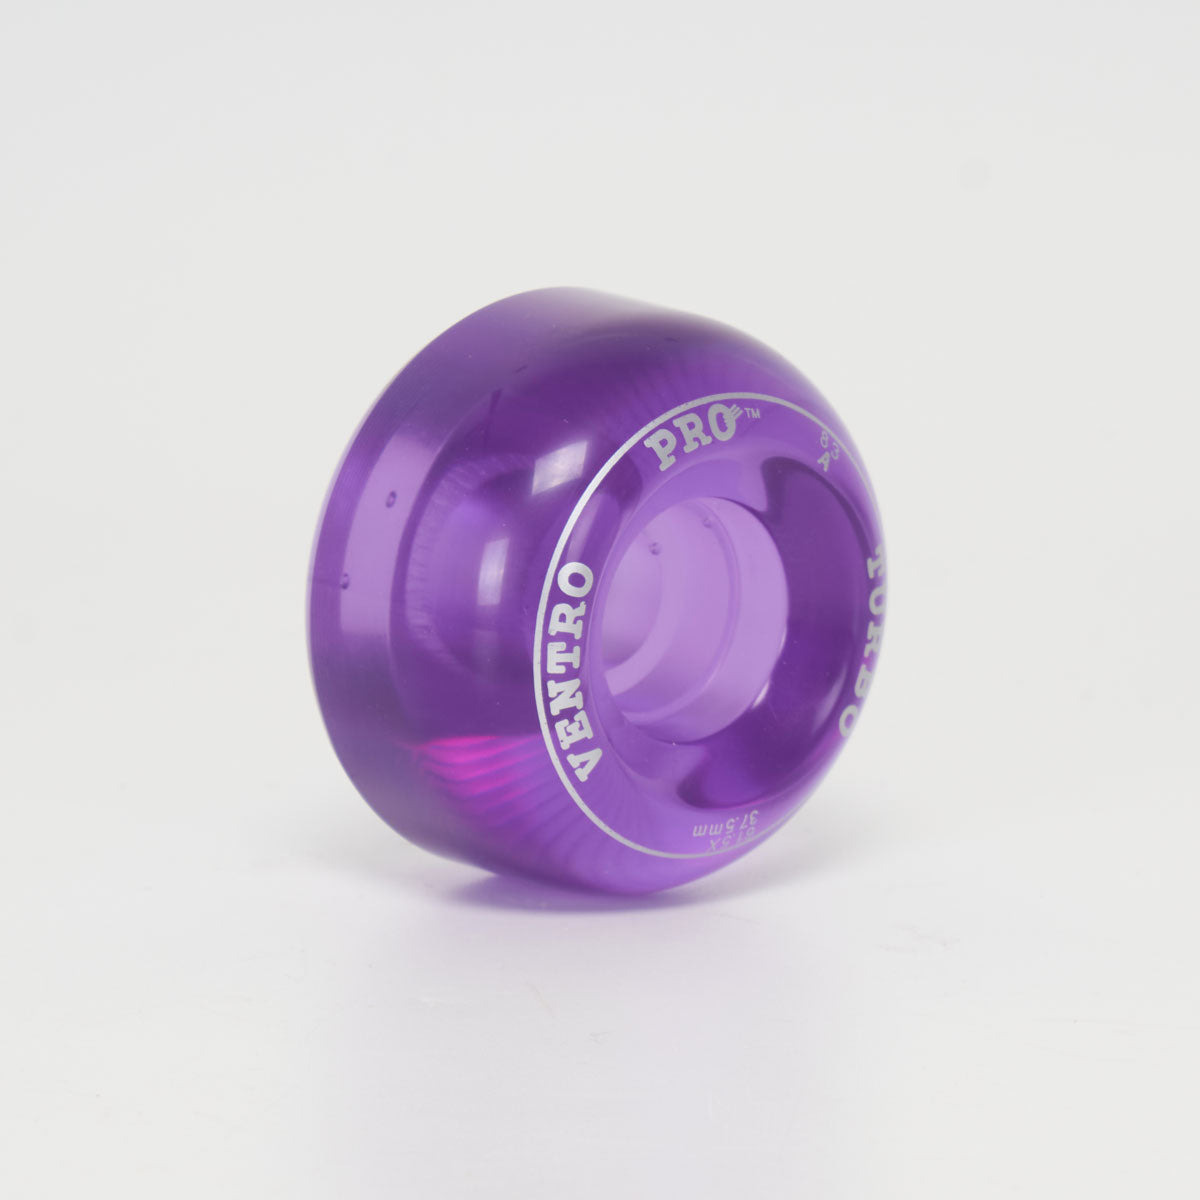 Ventro Pro 61.5mm/83a Wheels - Purple (Singles)